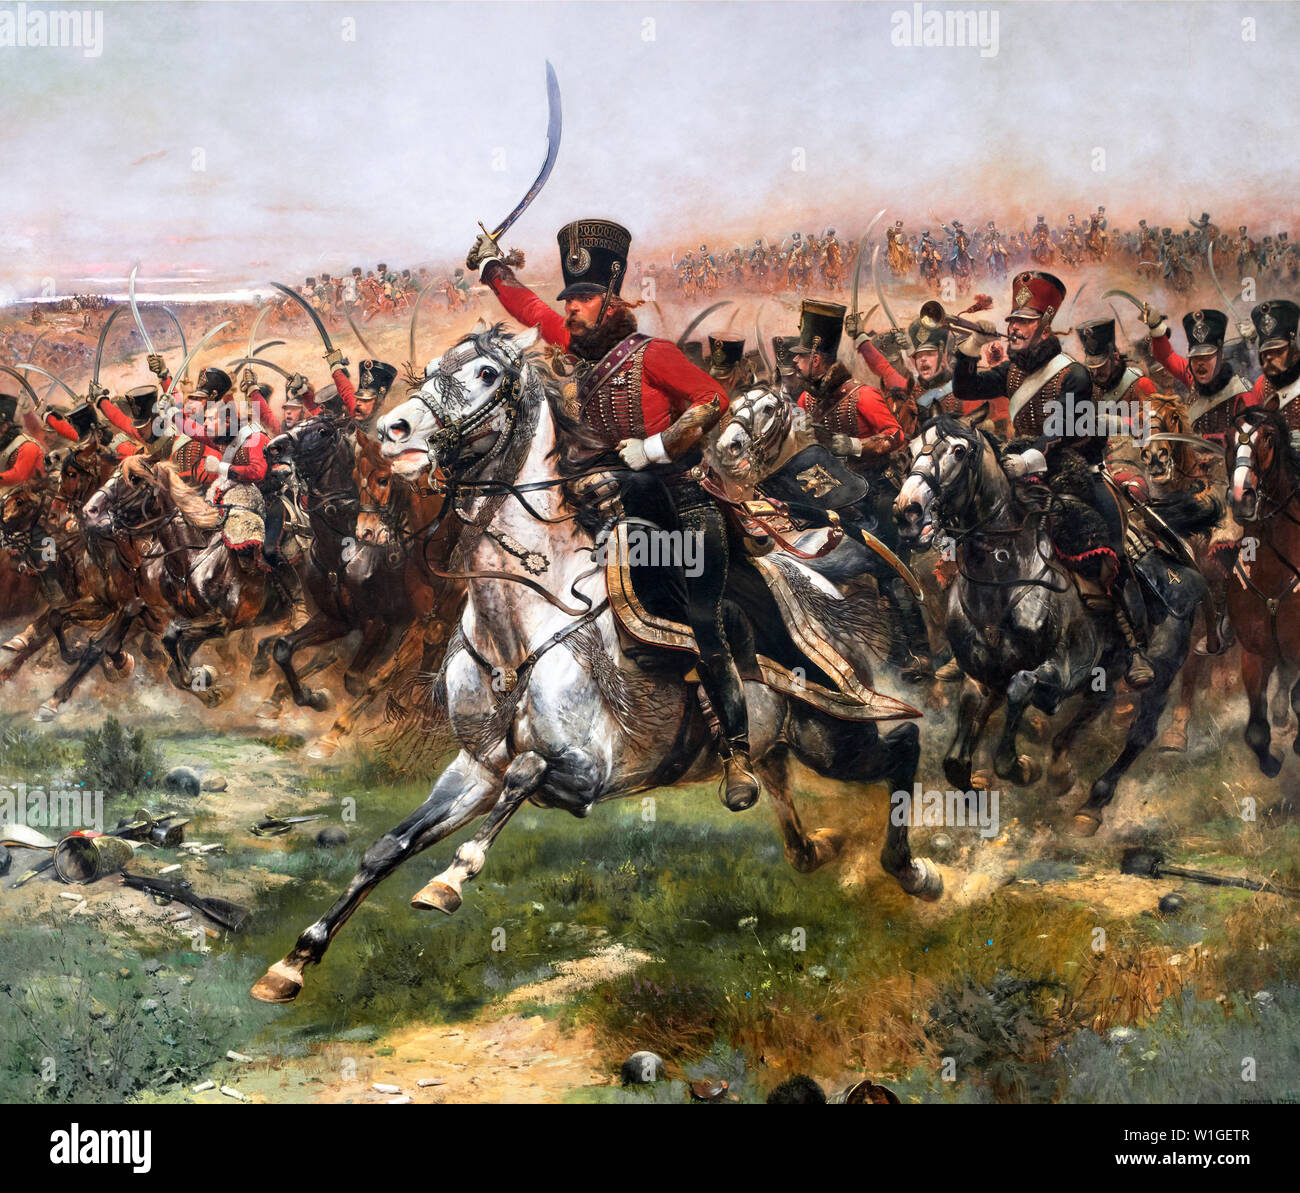 Vive l'Empereur por Jean-Baptiste Édouard Detaille (1848-1912), óleo sobre lienzo, 1891. La pintura muestra una carga de caballería de la 4th Hussars durante la batalla de Friedland en las guerras napoleónicas. Foto de stock